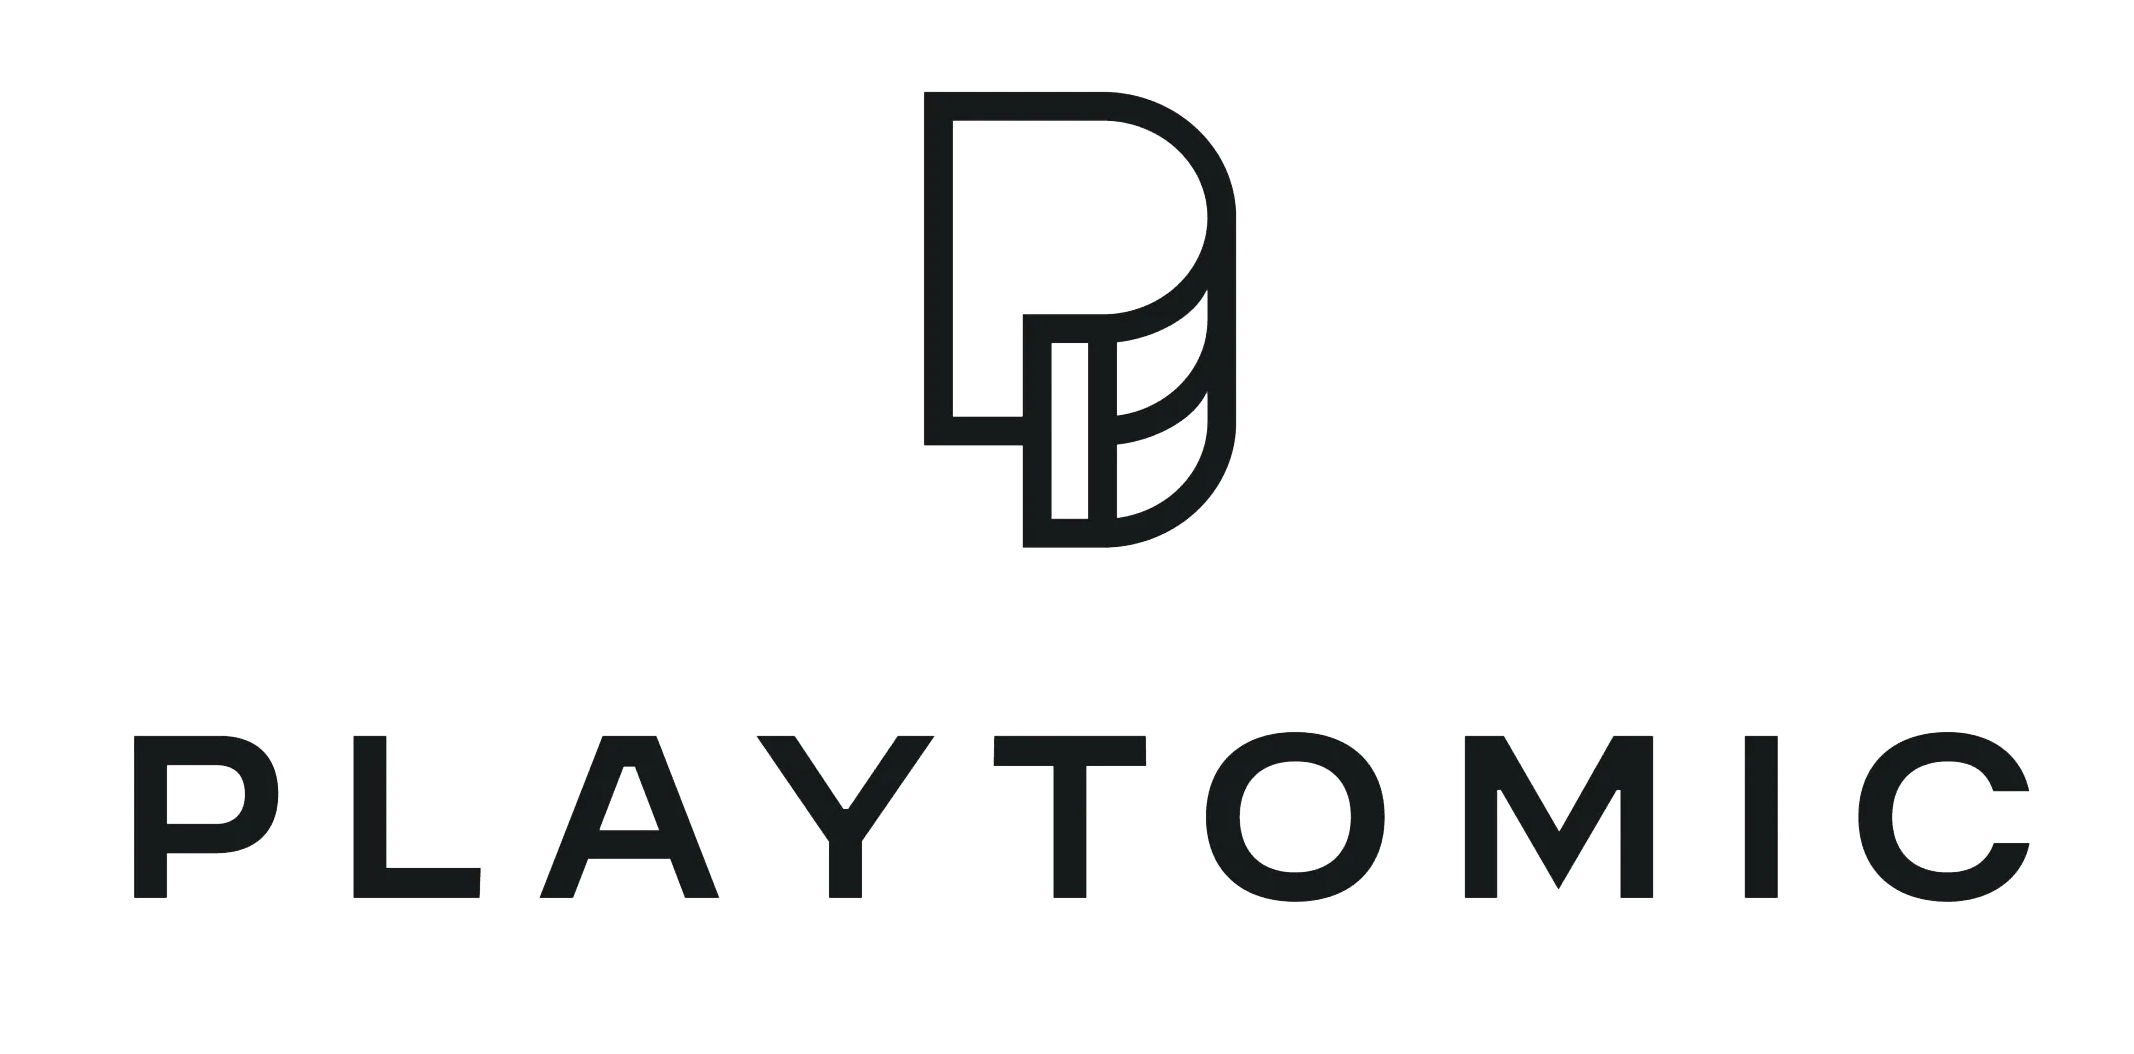 The logo of Playtomic